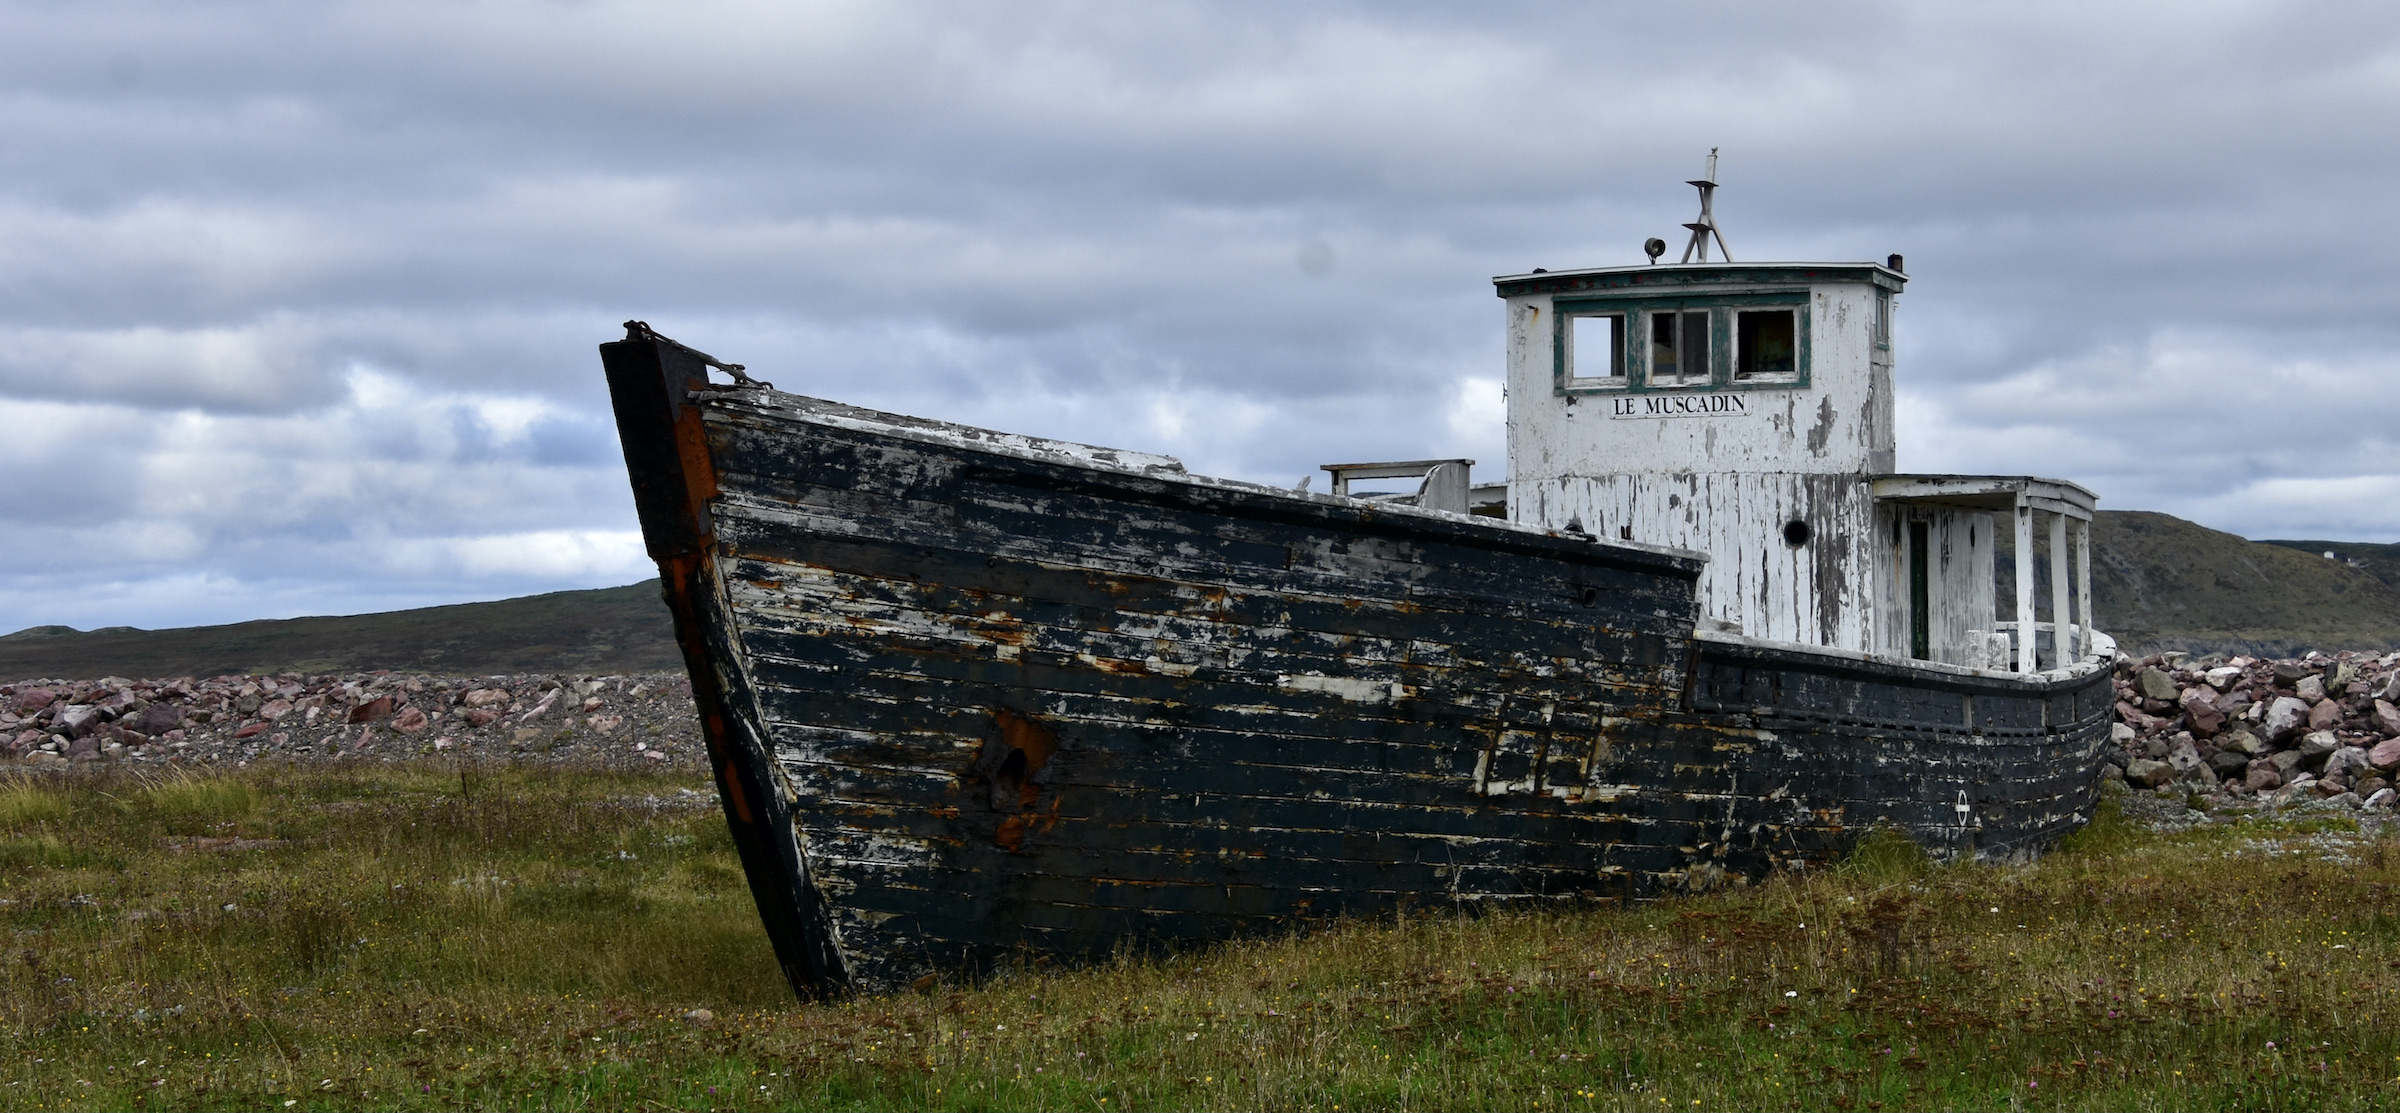 Le Muscadin, St. Pierre & Miquelon